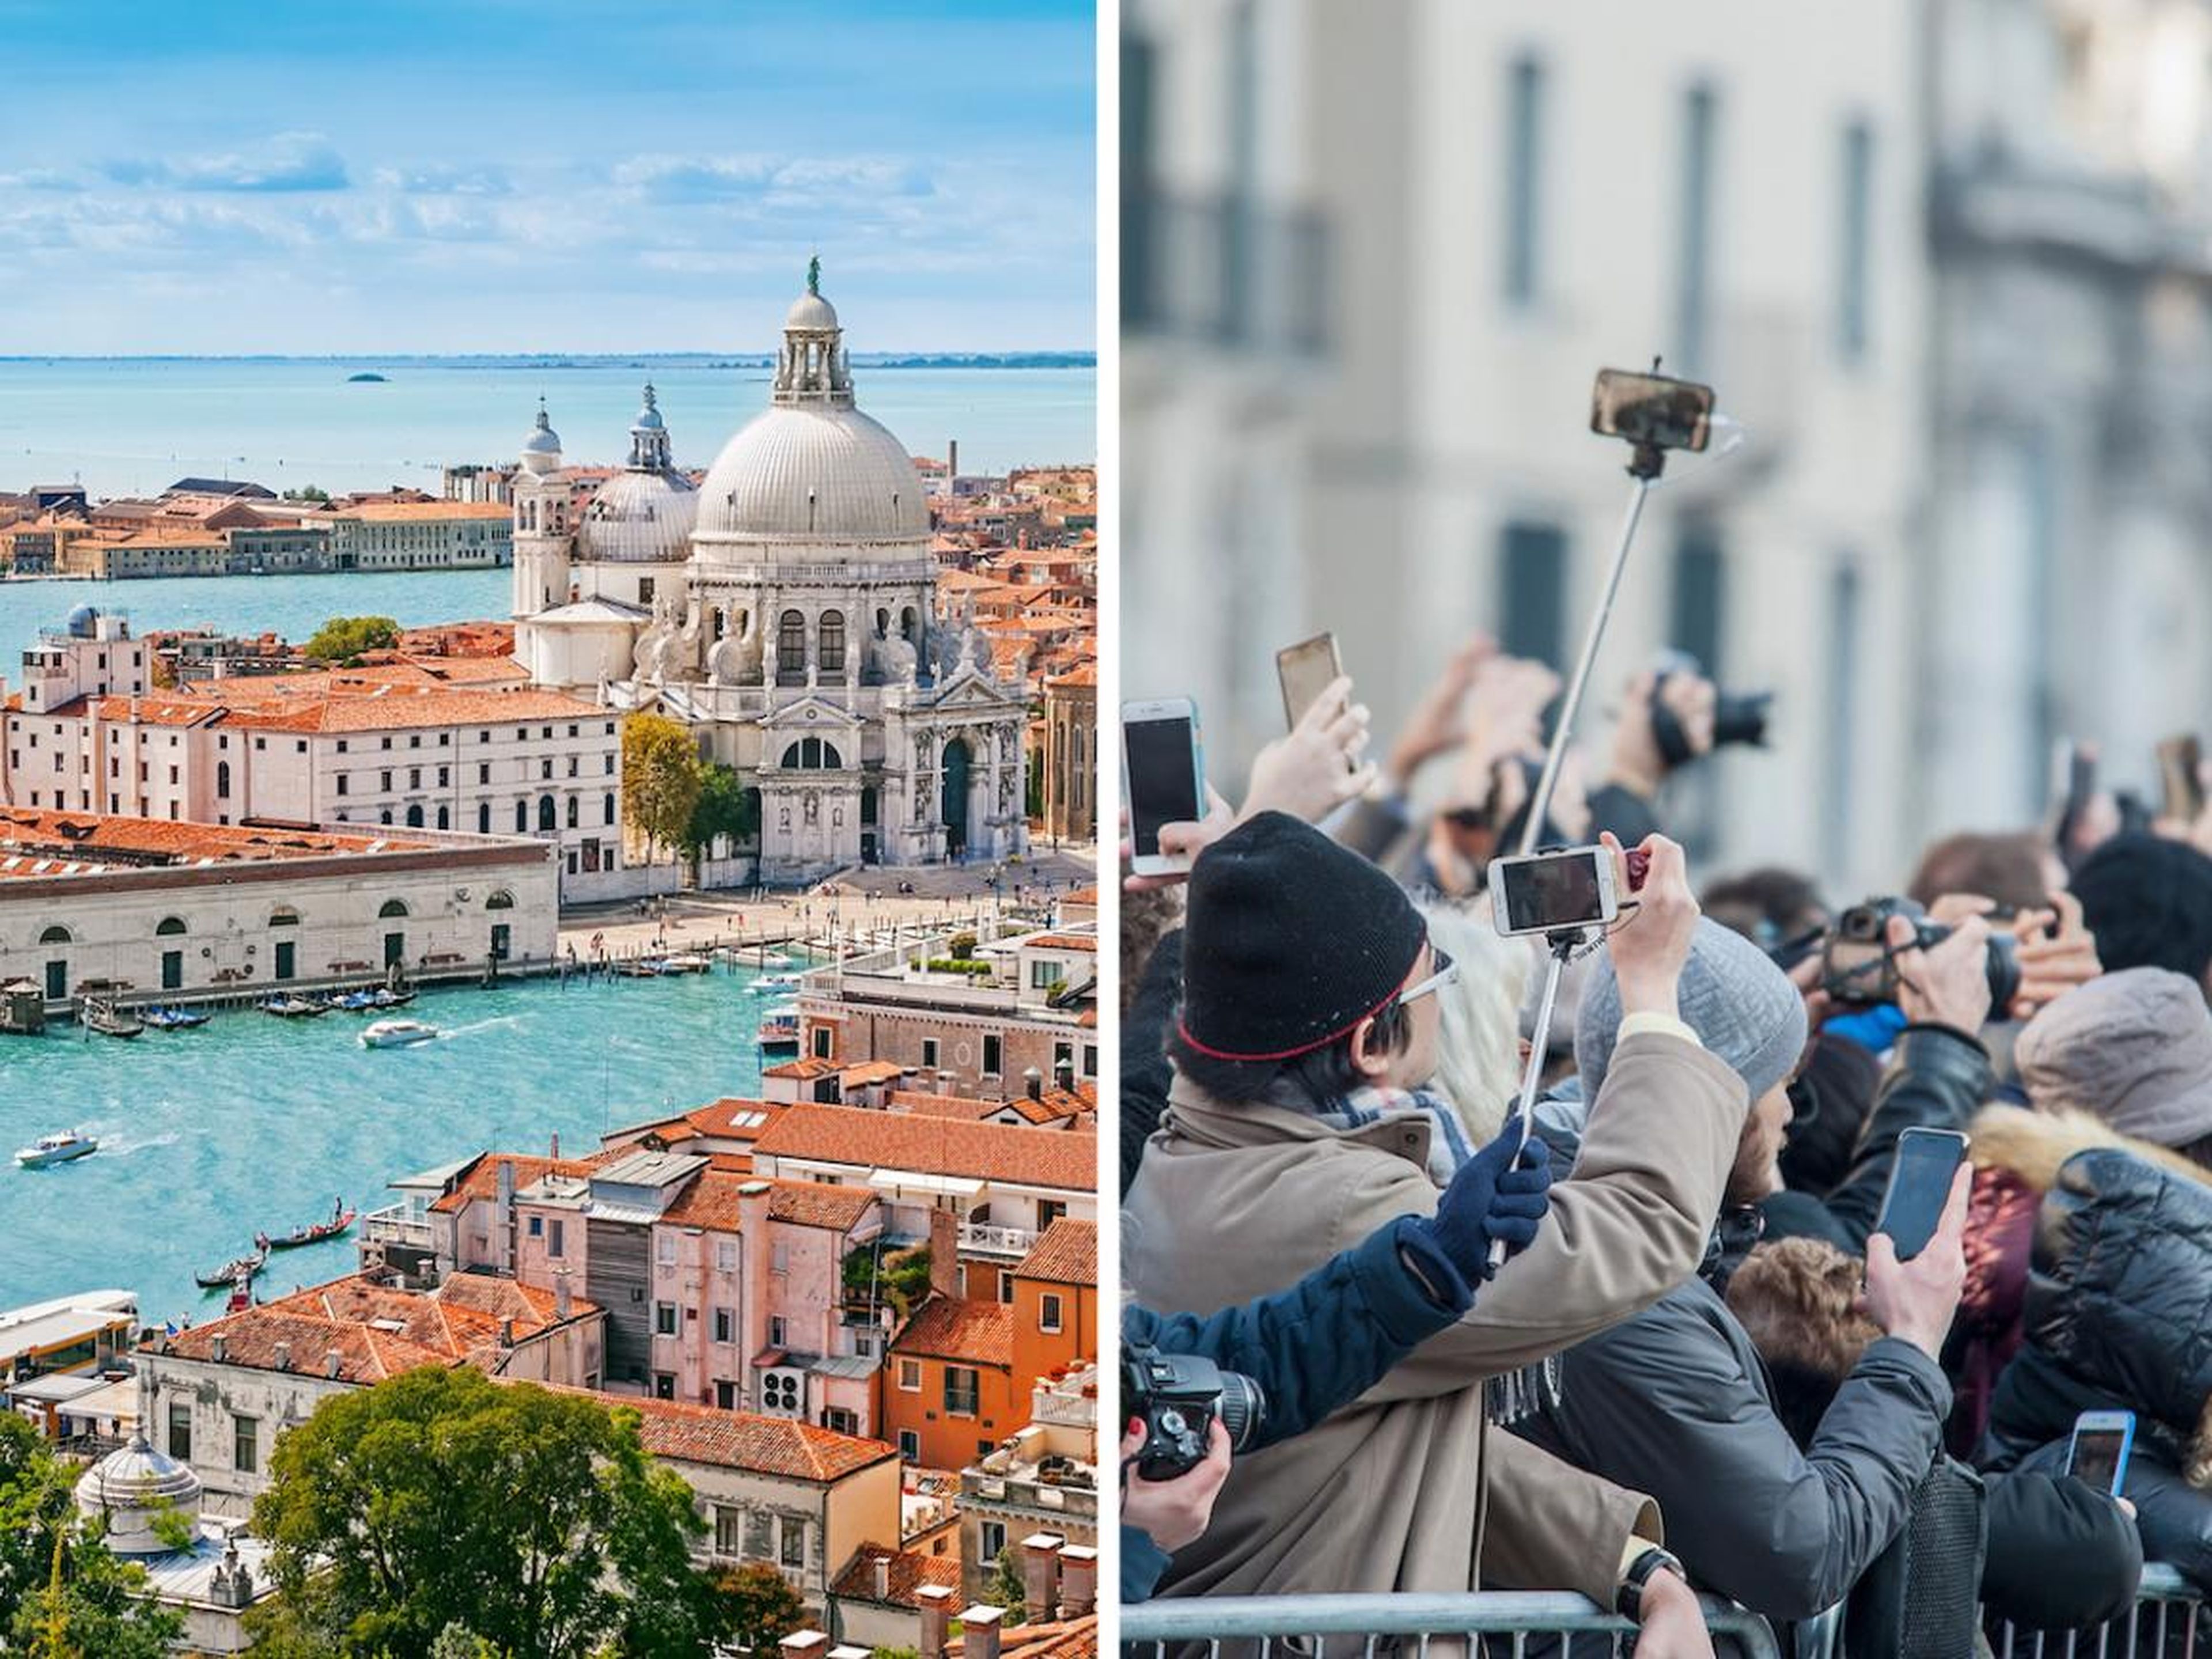 Entre 26 y 30 millones de turistas visitan Venecia cada año.